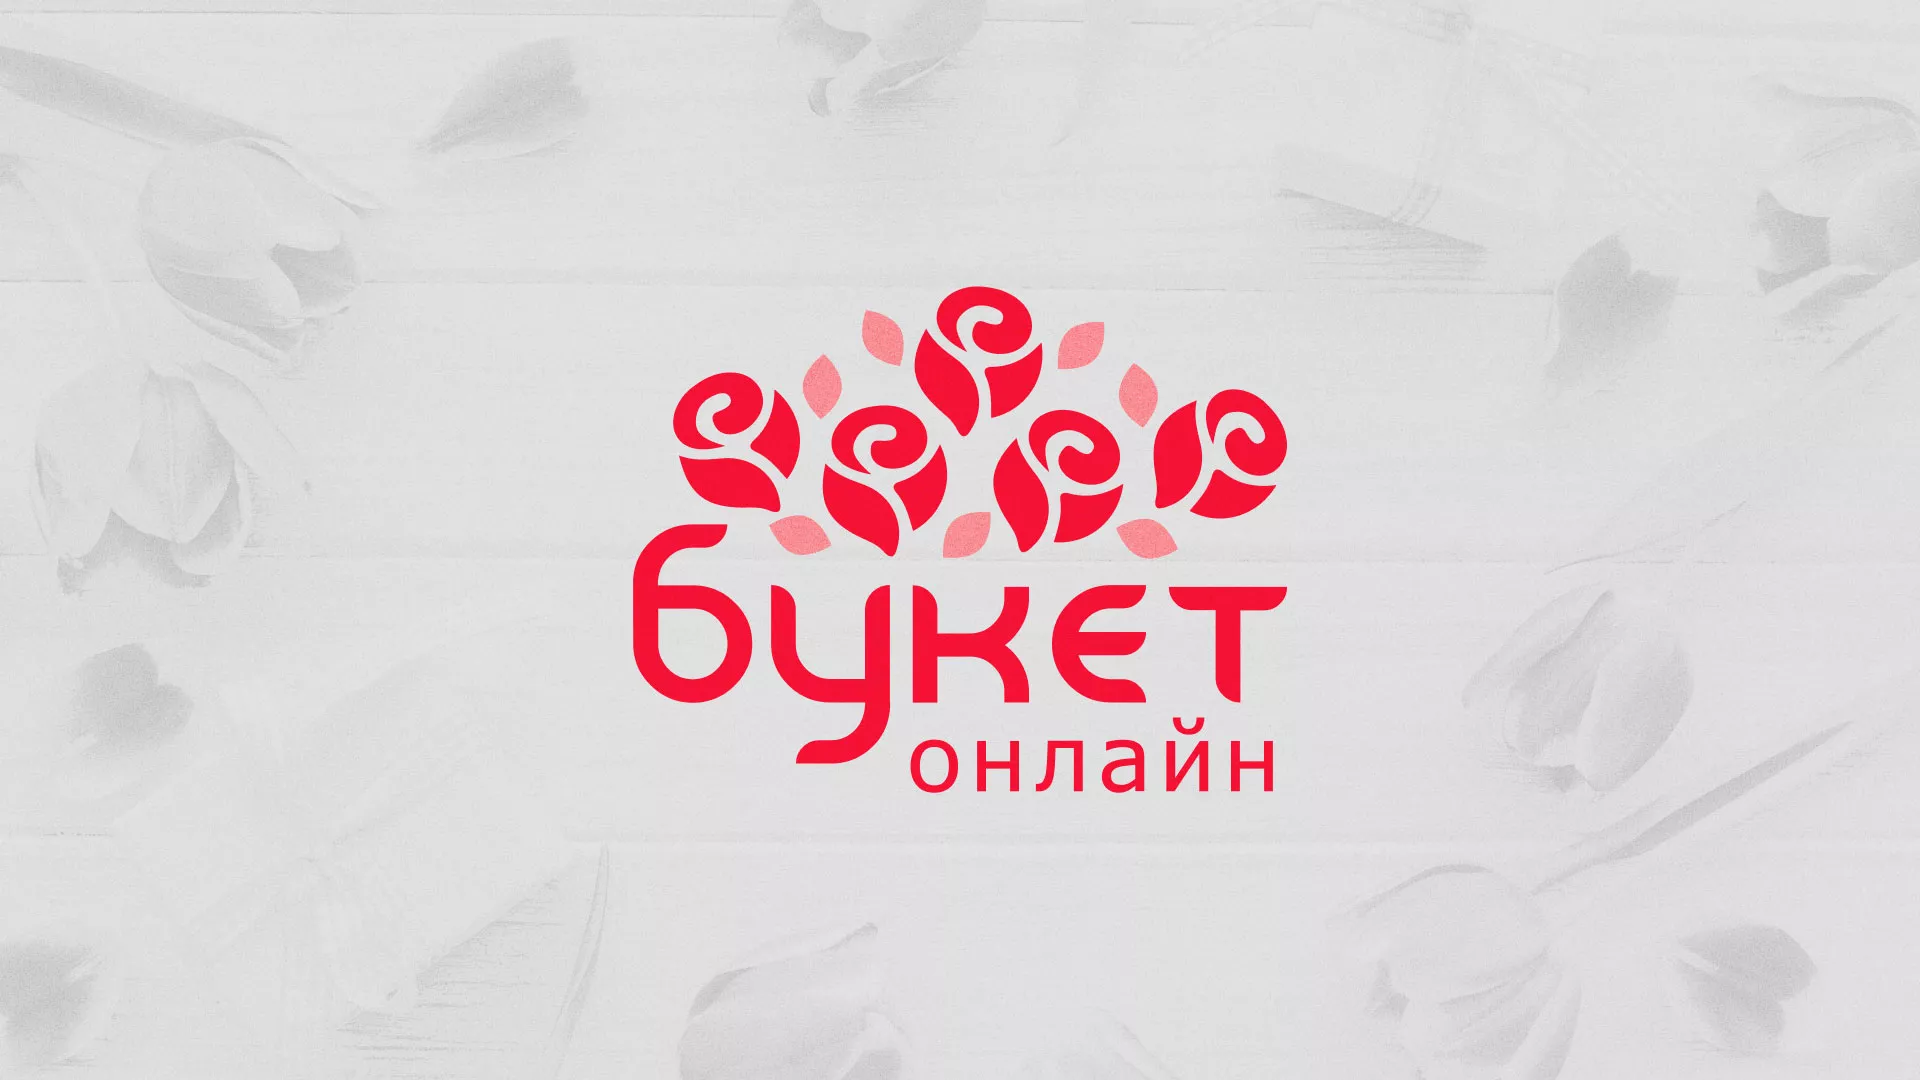 Создание интернет-магазина «Букет-онлайн» по цветам в Озёрске